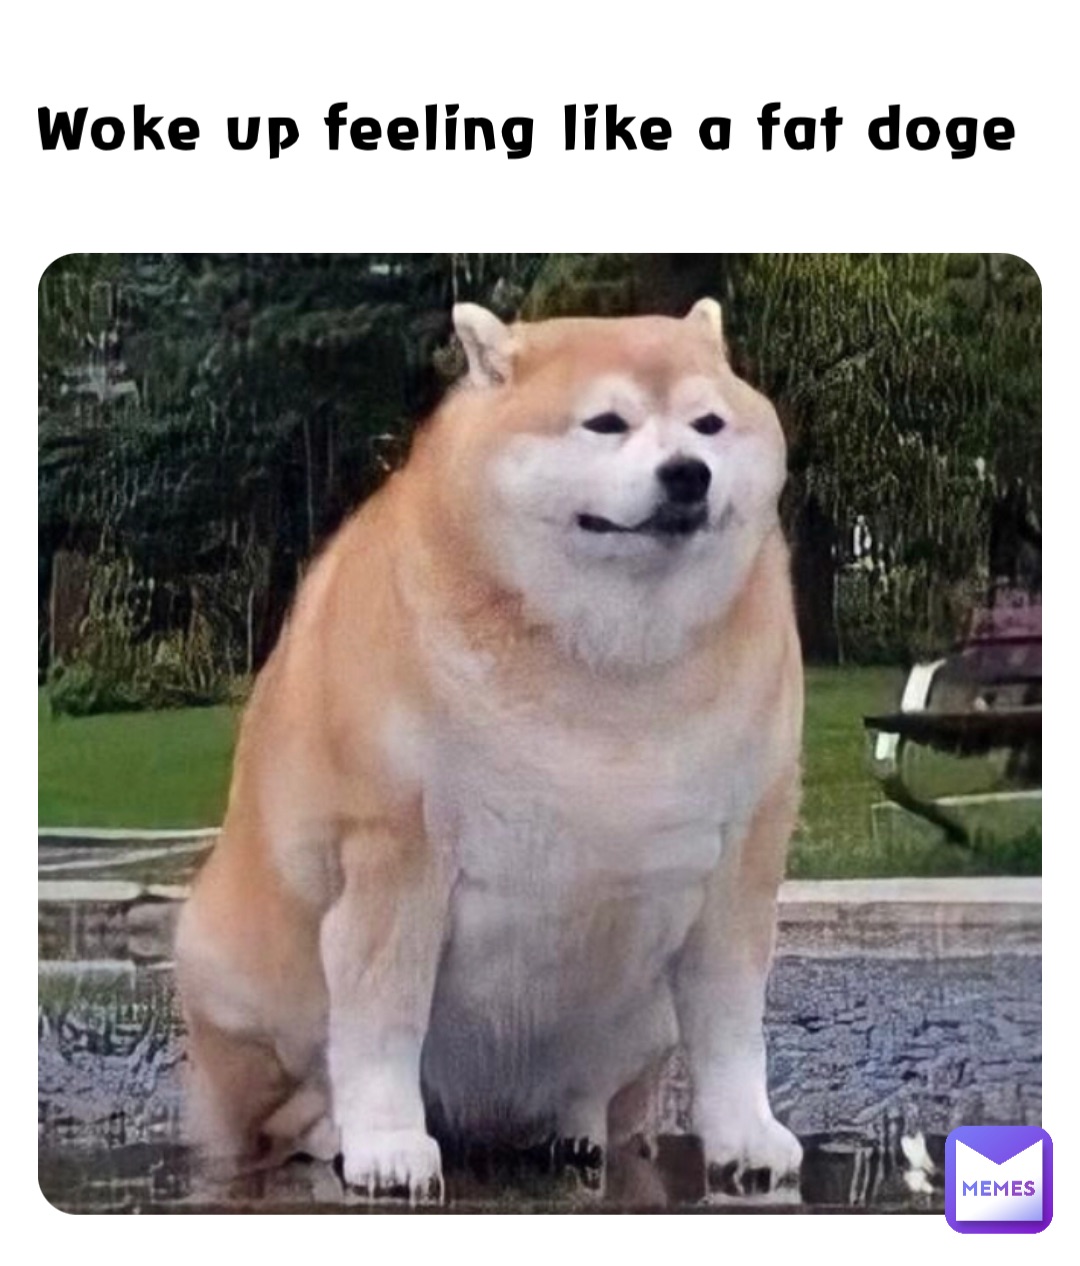 Woke up feeling like a fat doge